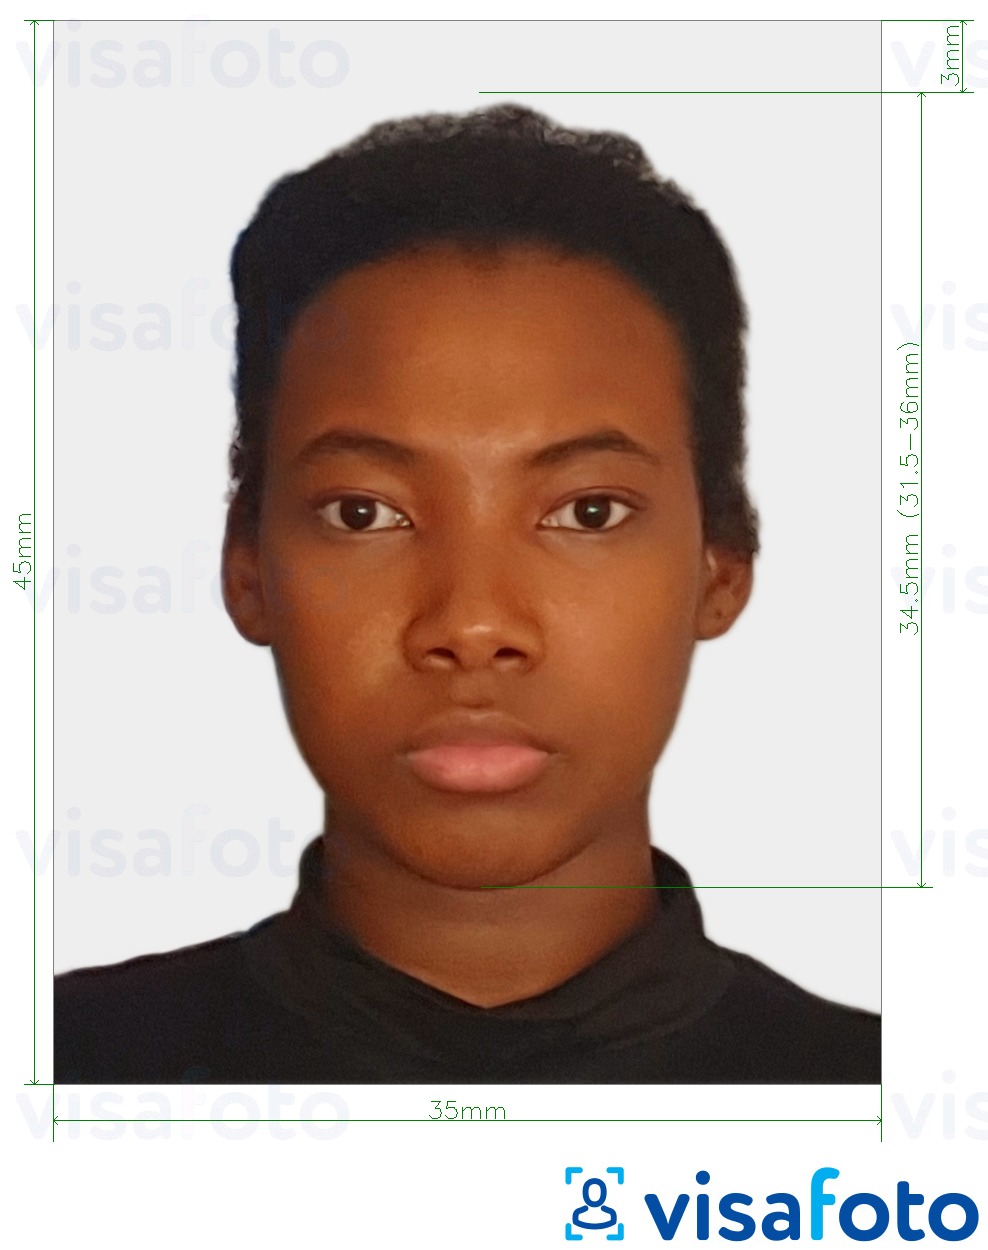 Voorbeeld van foto voor Gabon evisa foto 35x45 mm (3,5x4,5 cm) met exacte maatspecificatie